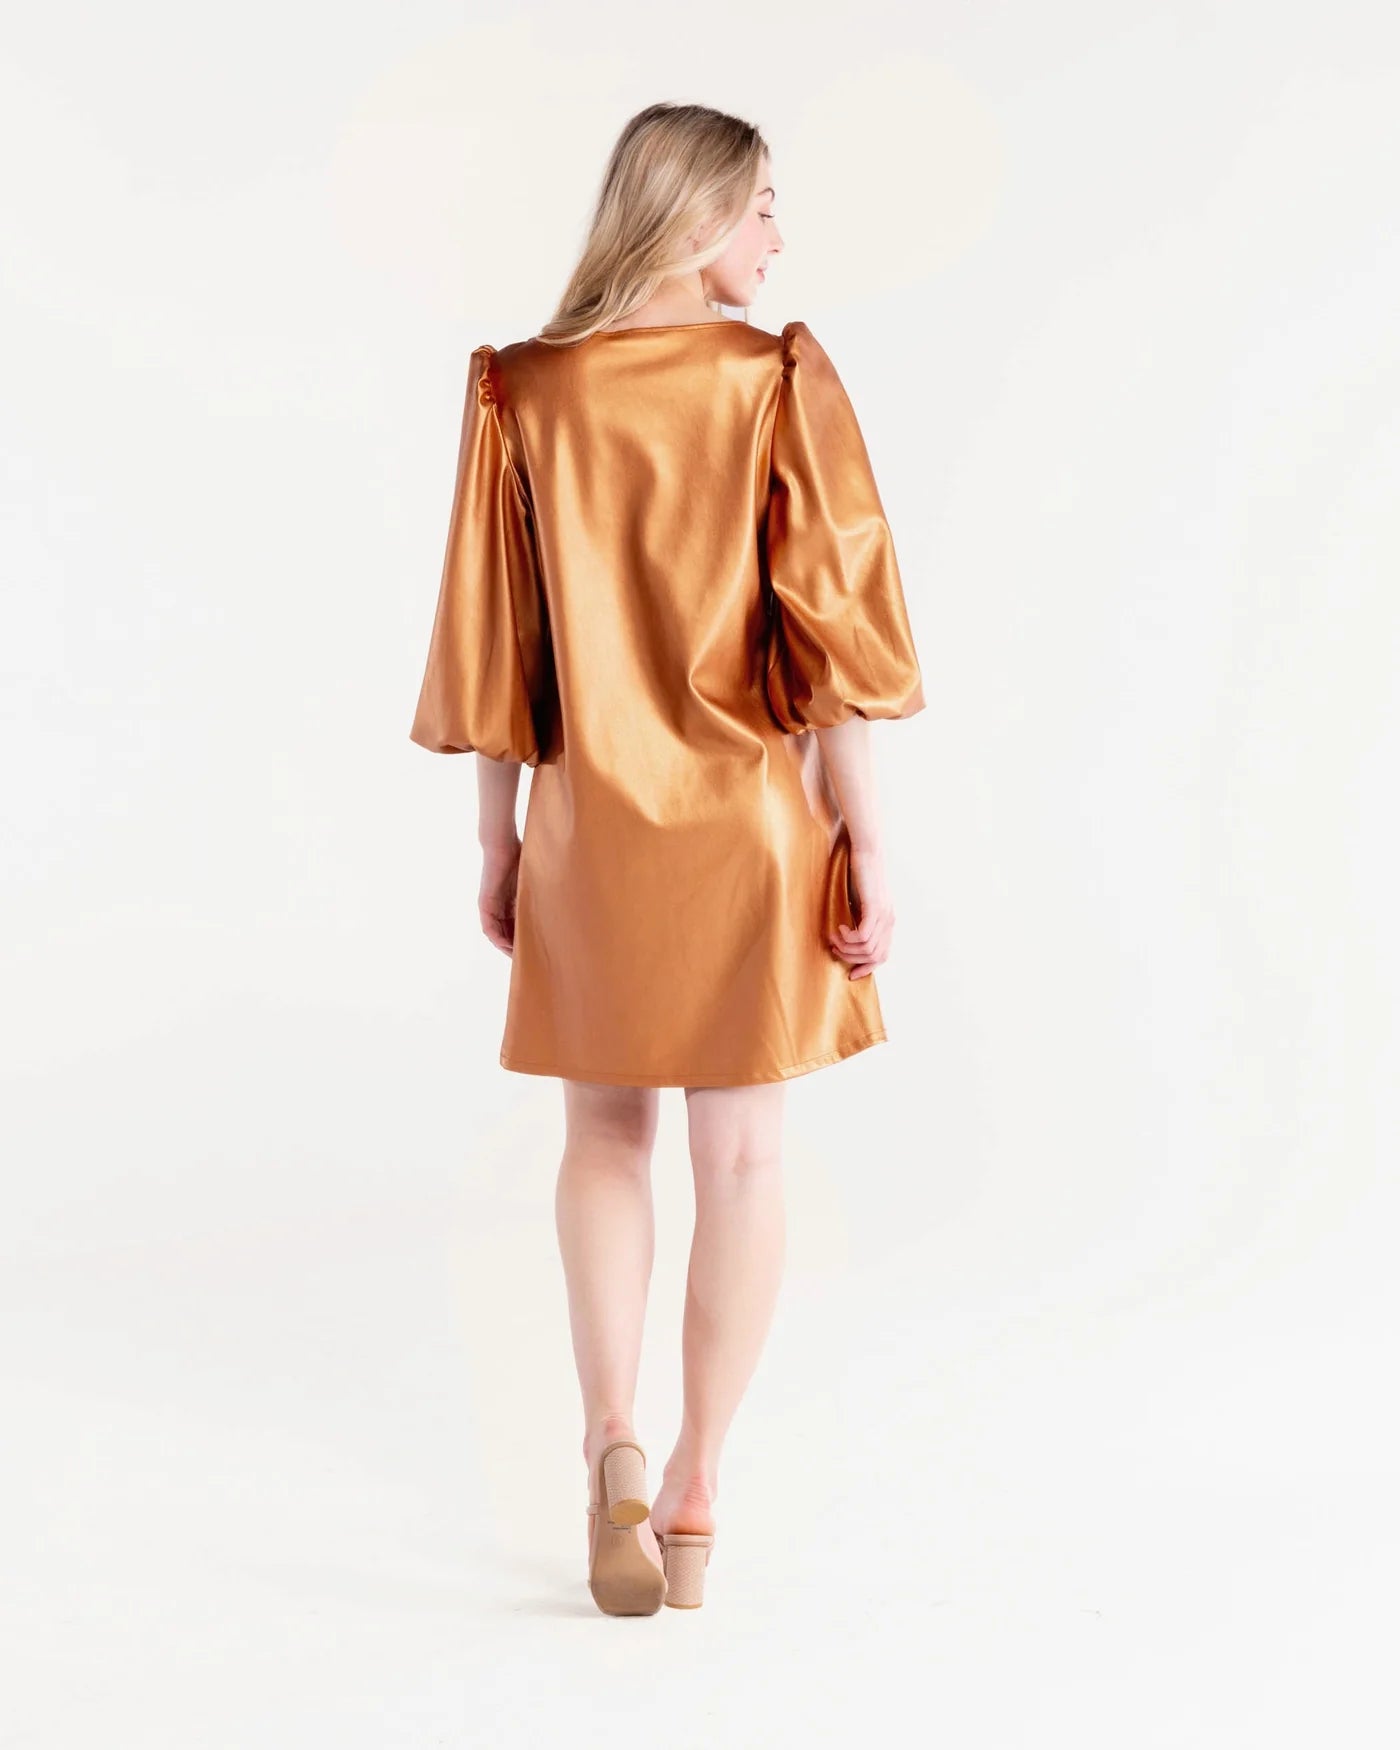 Collette Copper Dress by S'edge